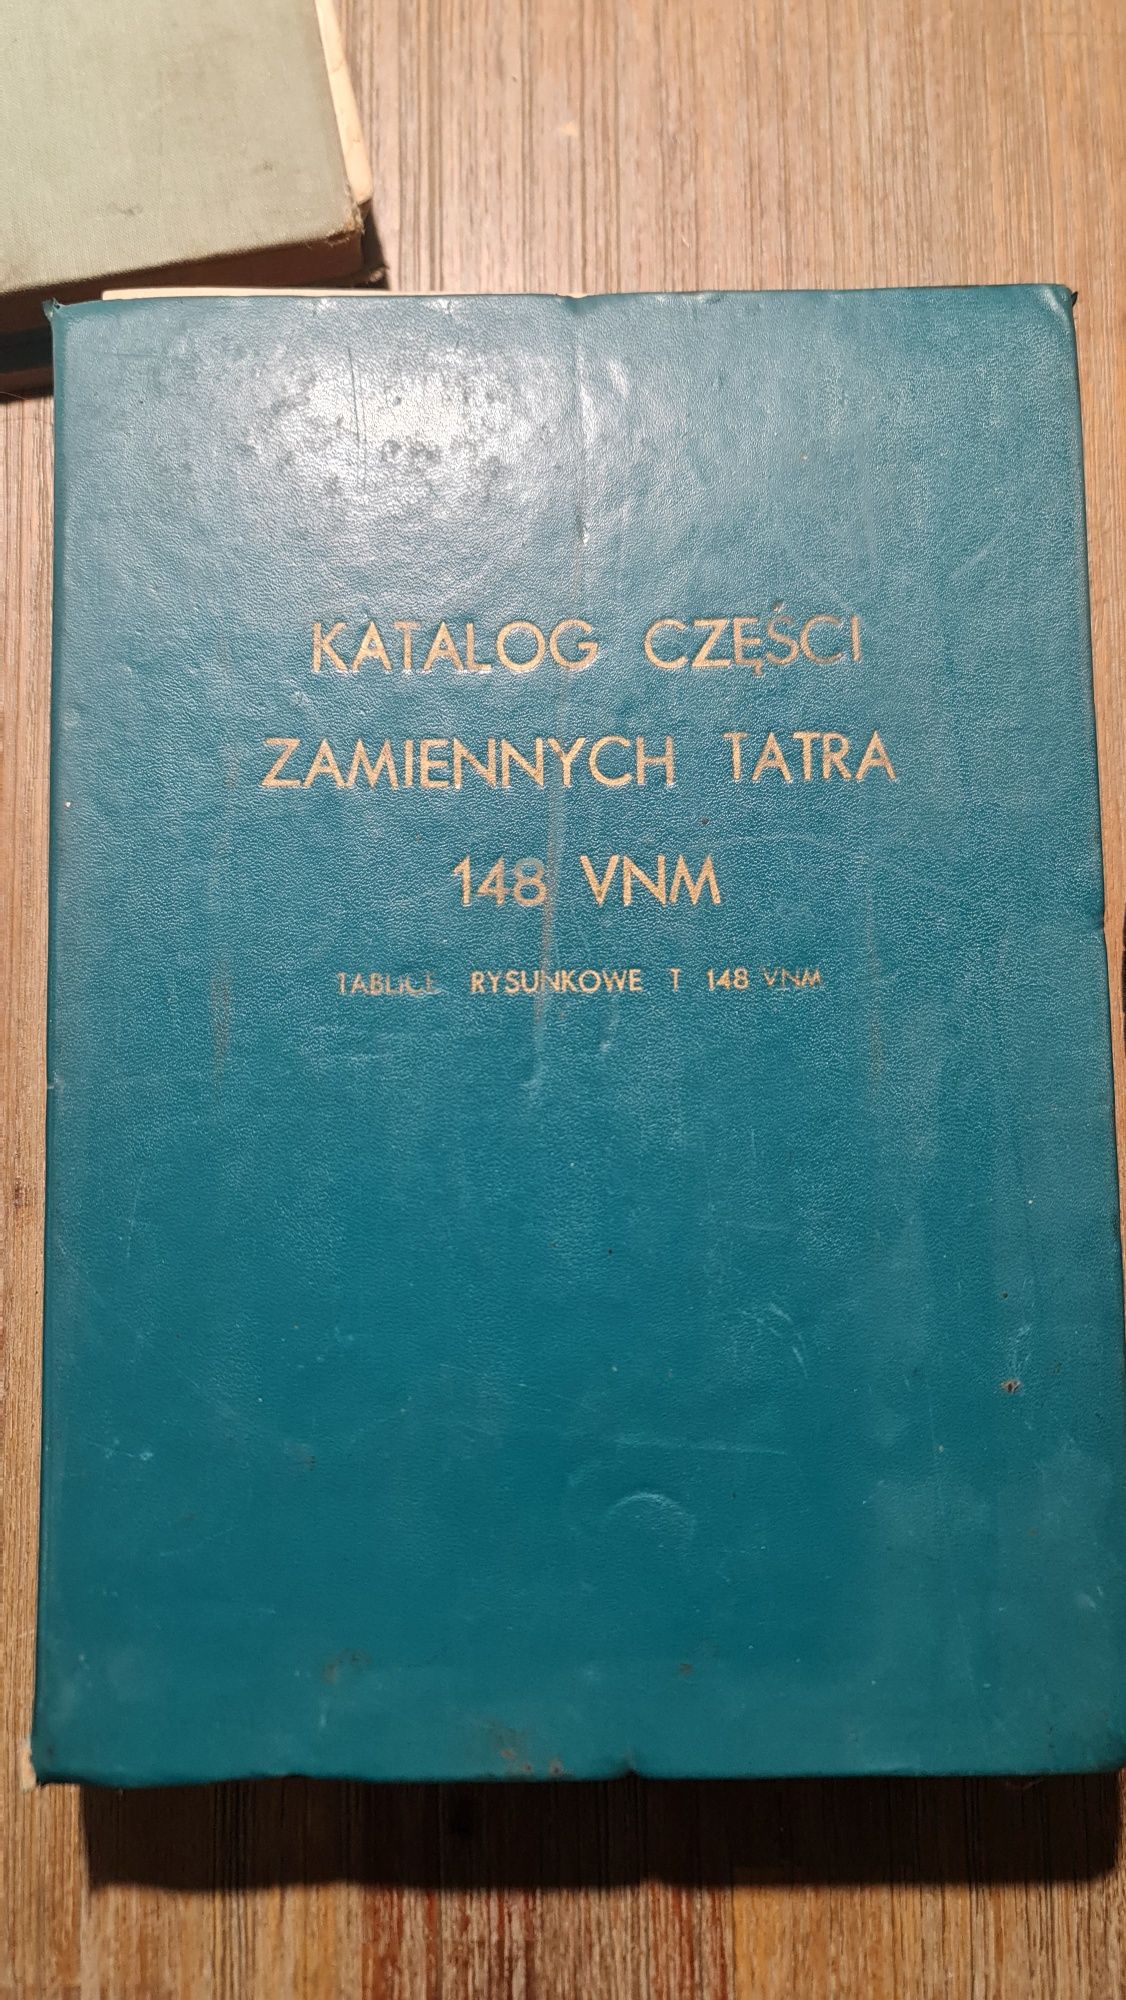 Katalog części zamiennych TATRA 148 VNM